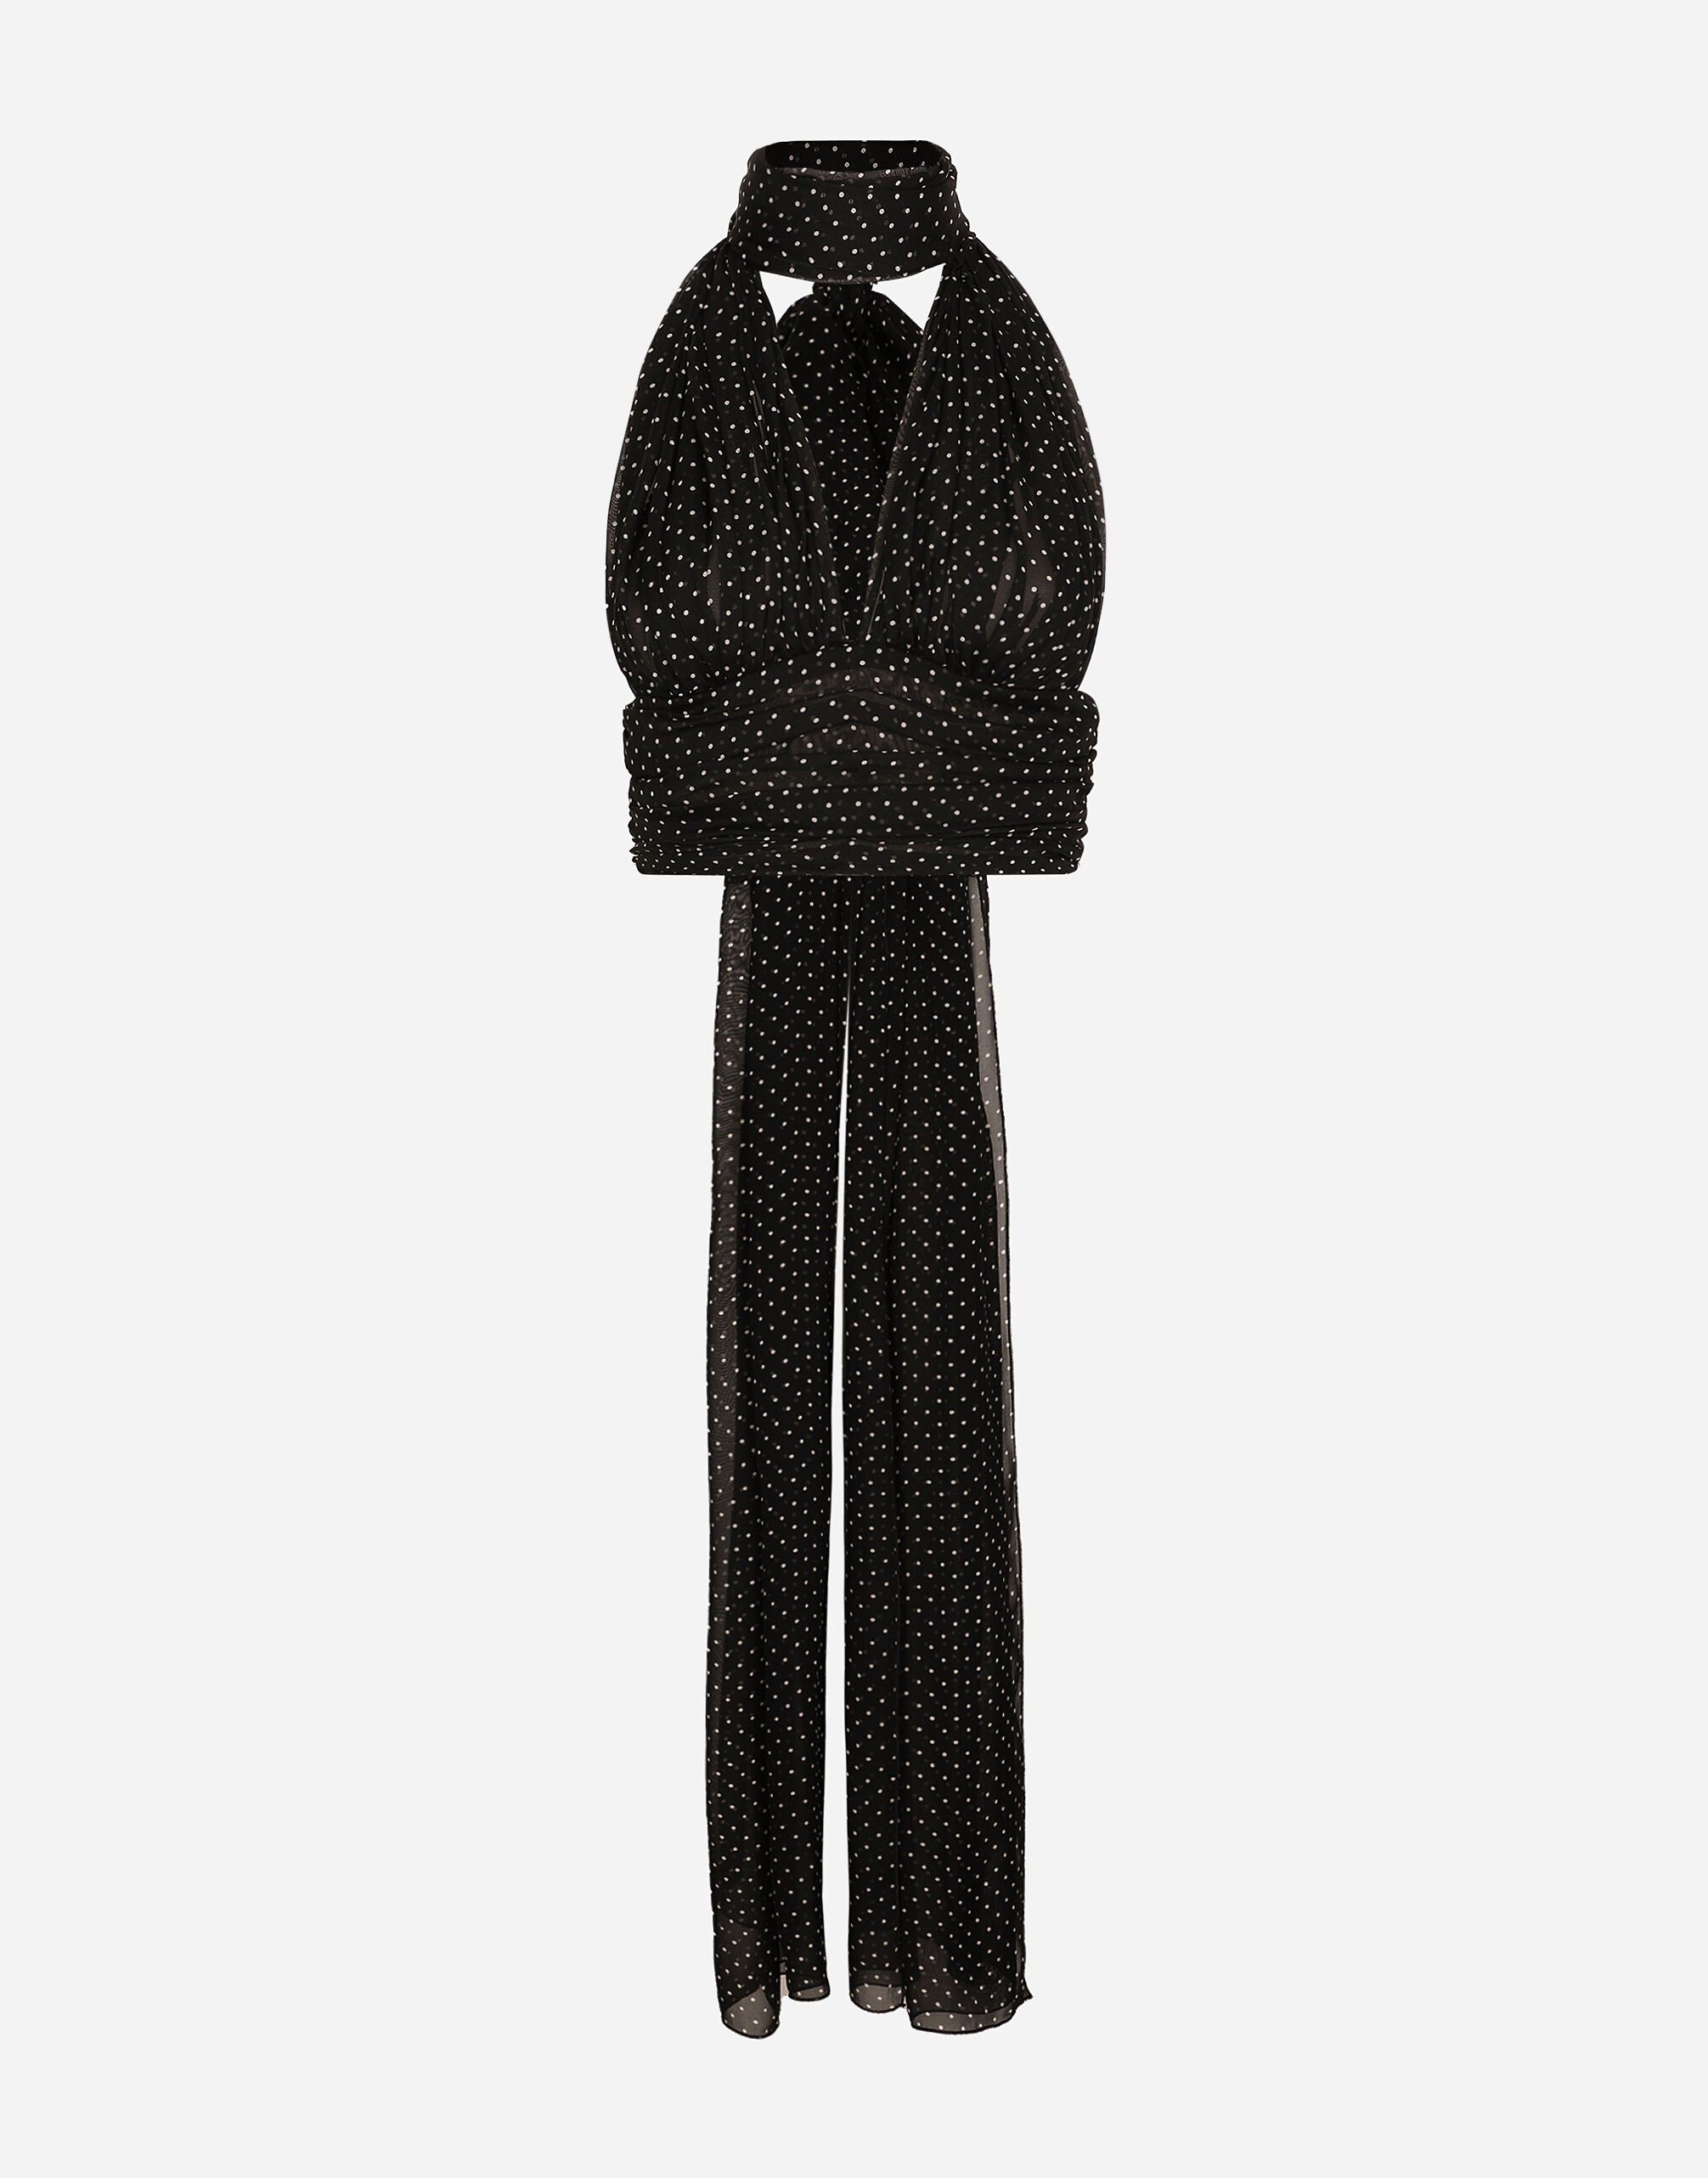 Dolce & Gabbana Top aus Chiffon Punkteprint mit Schluppenbändern Schwarz F6AUXTFUUBD